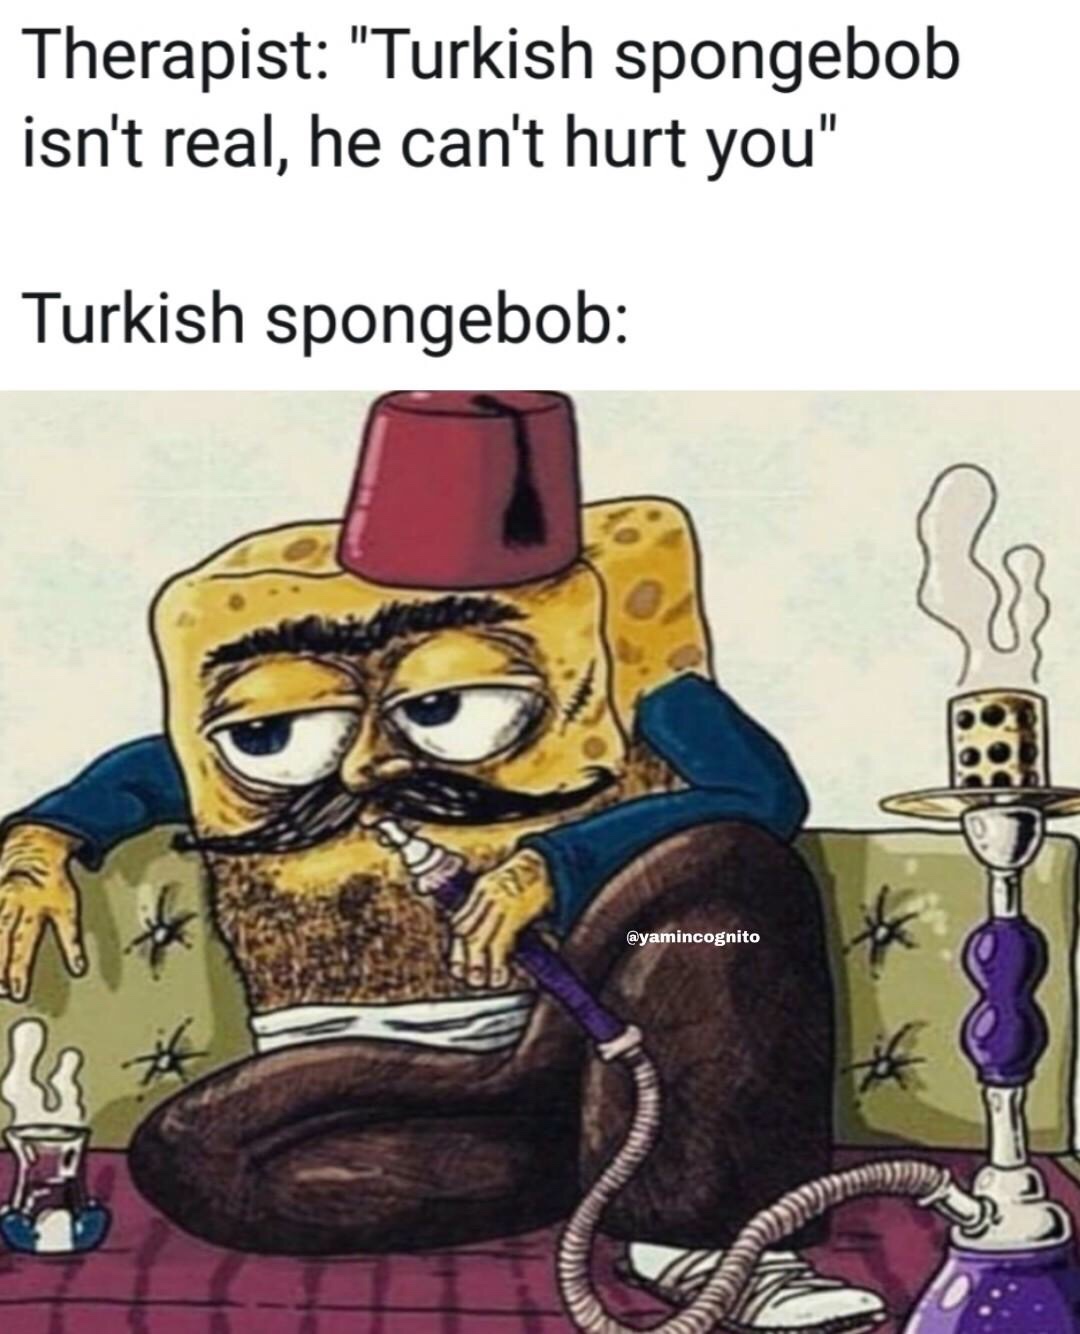 spongebob dank memes - Therapist "Turkish spongebob isn't real, he can't hurt you" Turkish spongebob